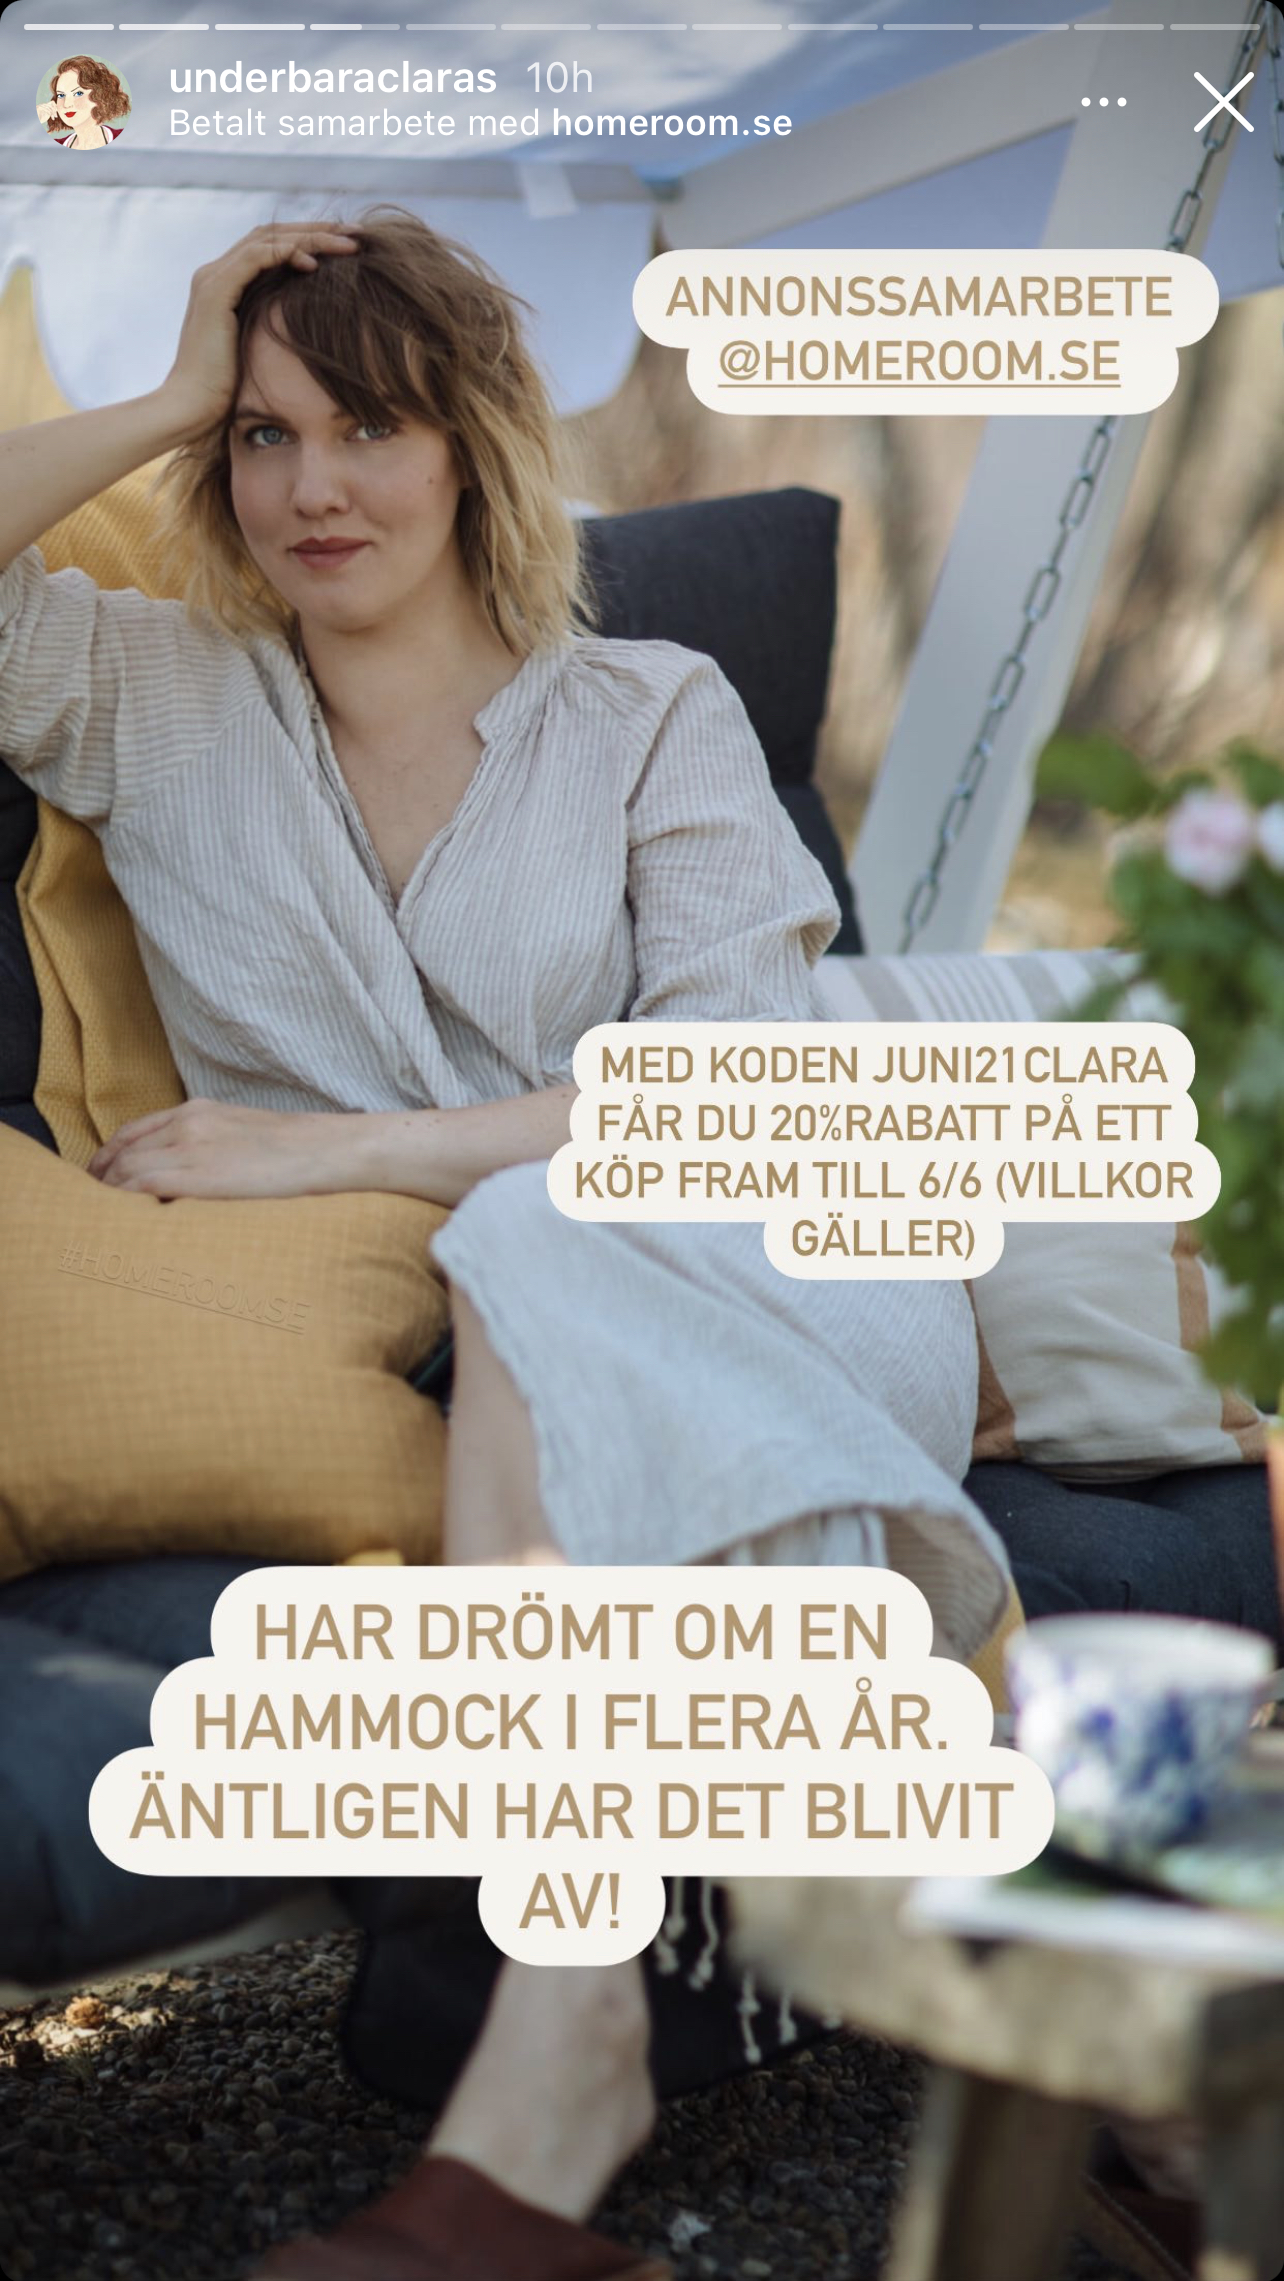 Ett reklaminlägg från Underbara Clara där hon gör reklam från bland annat en hammock från Homeroom.se